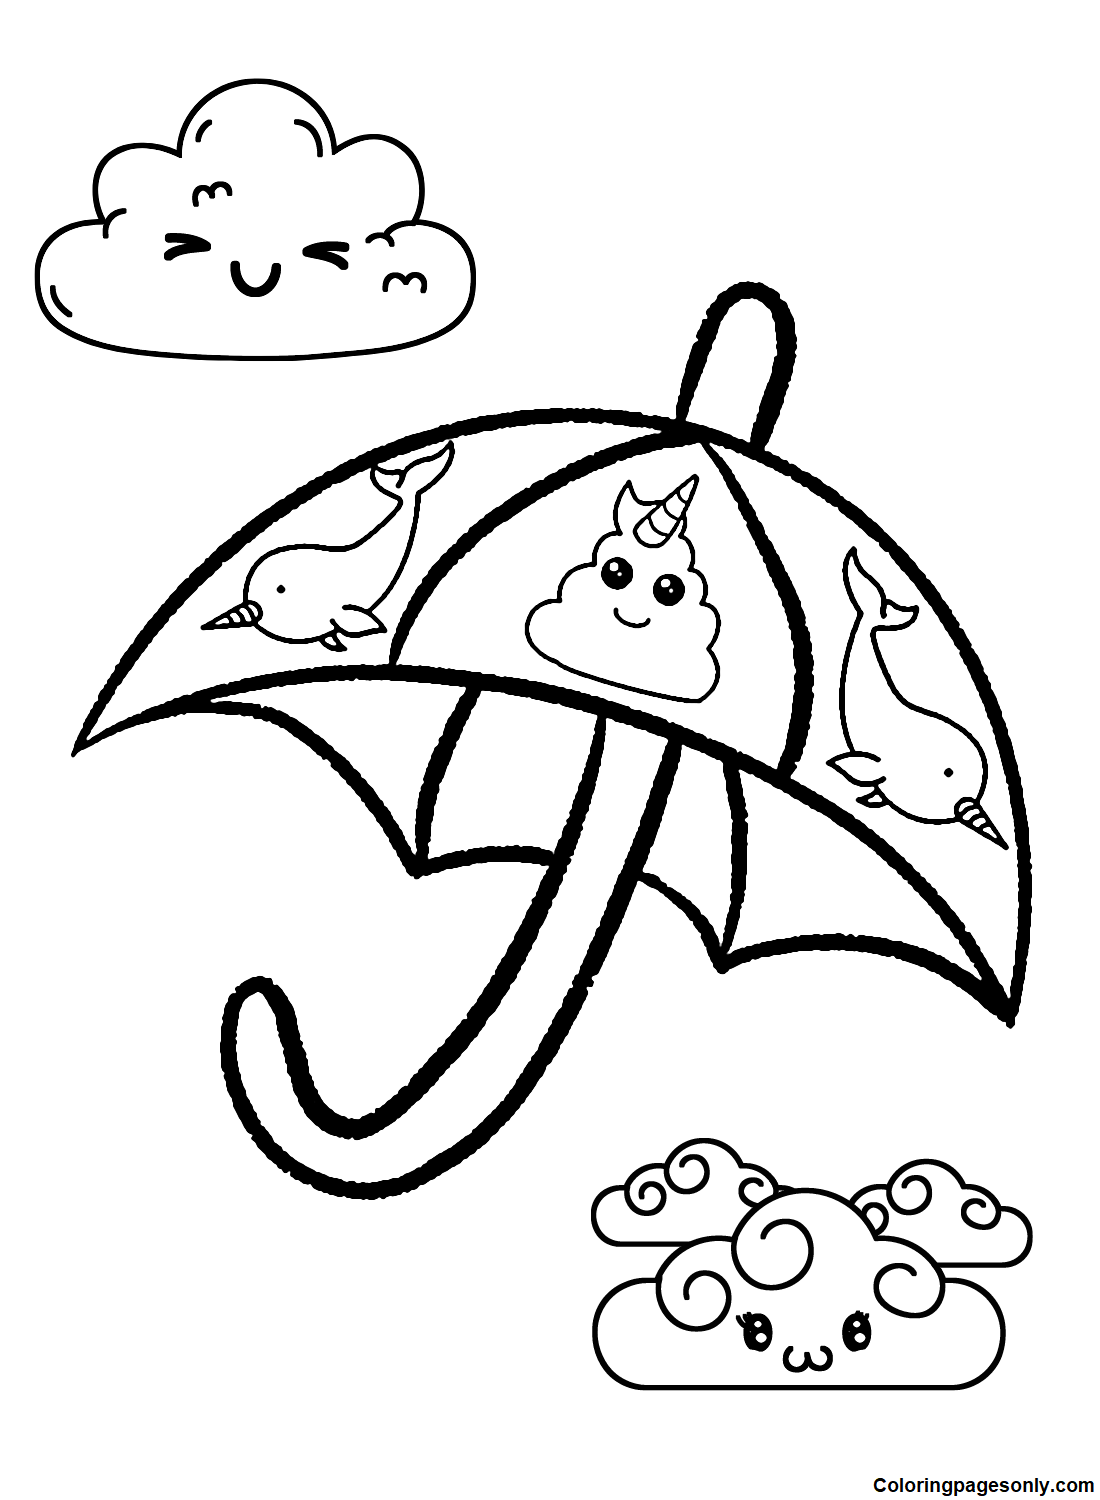 Adorable paraguas de Umbrella